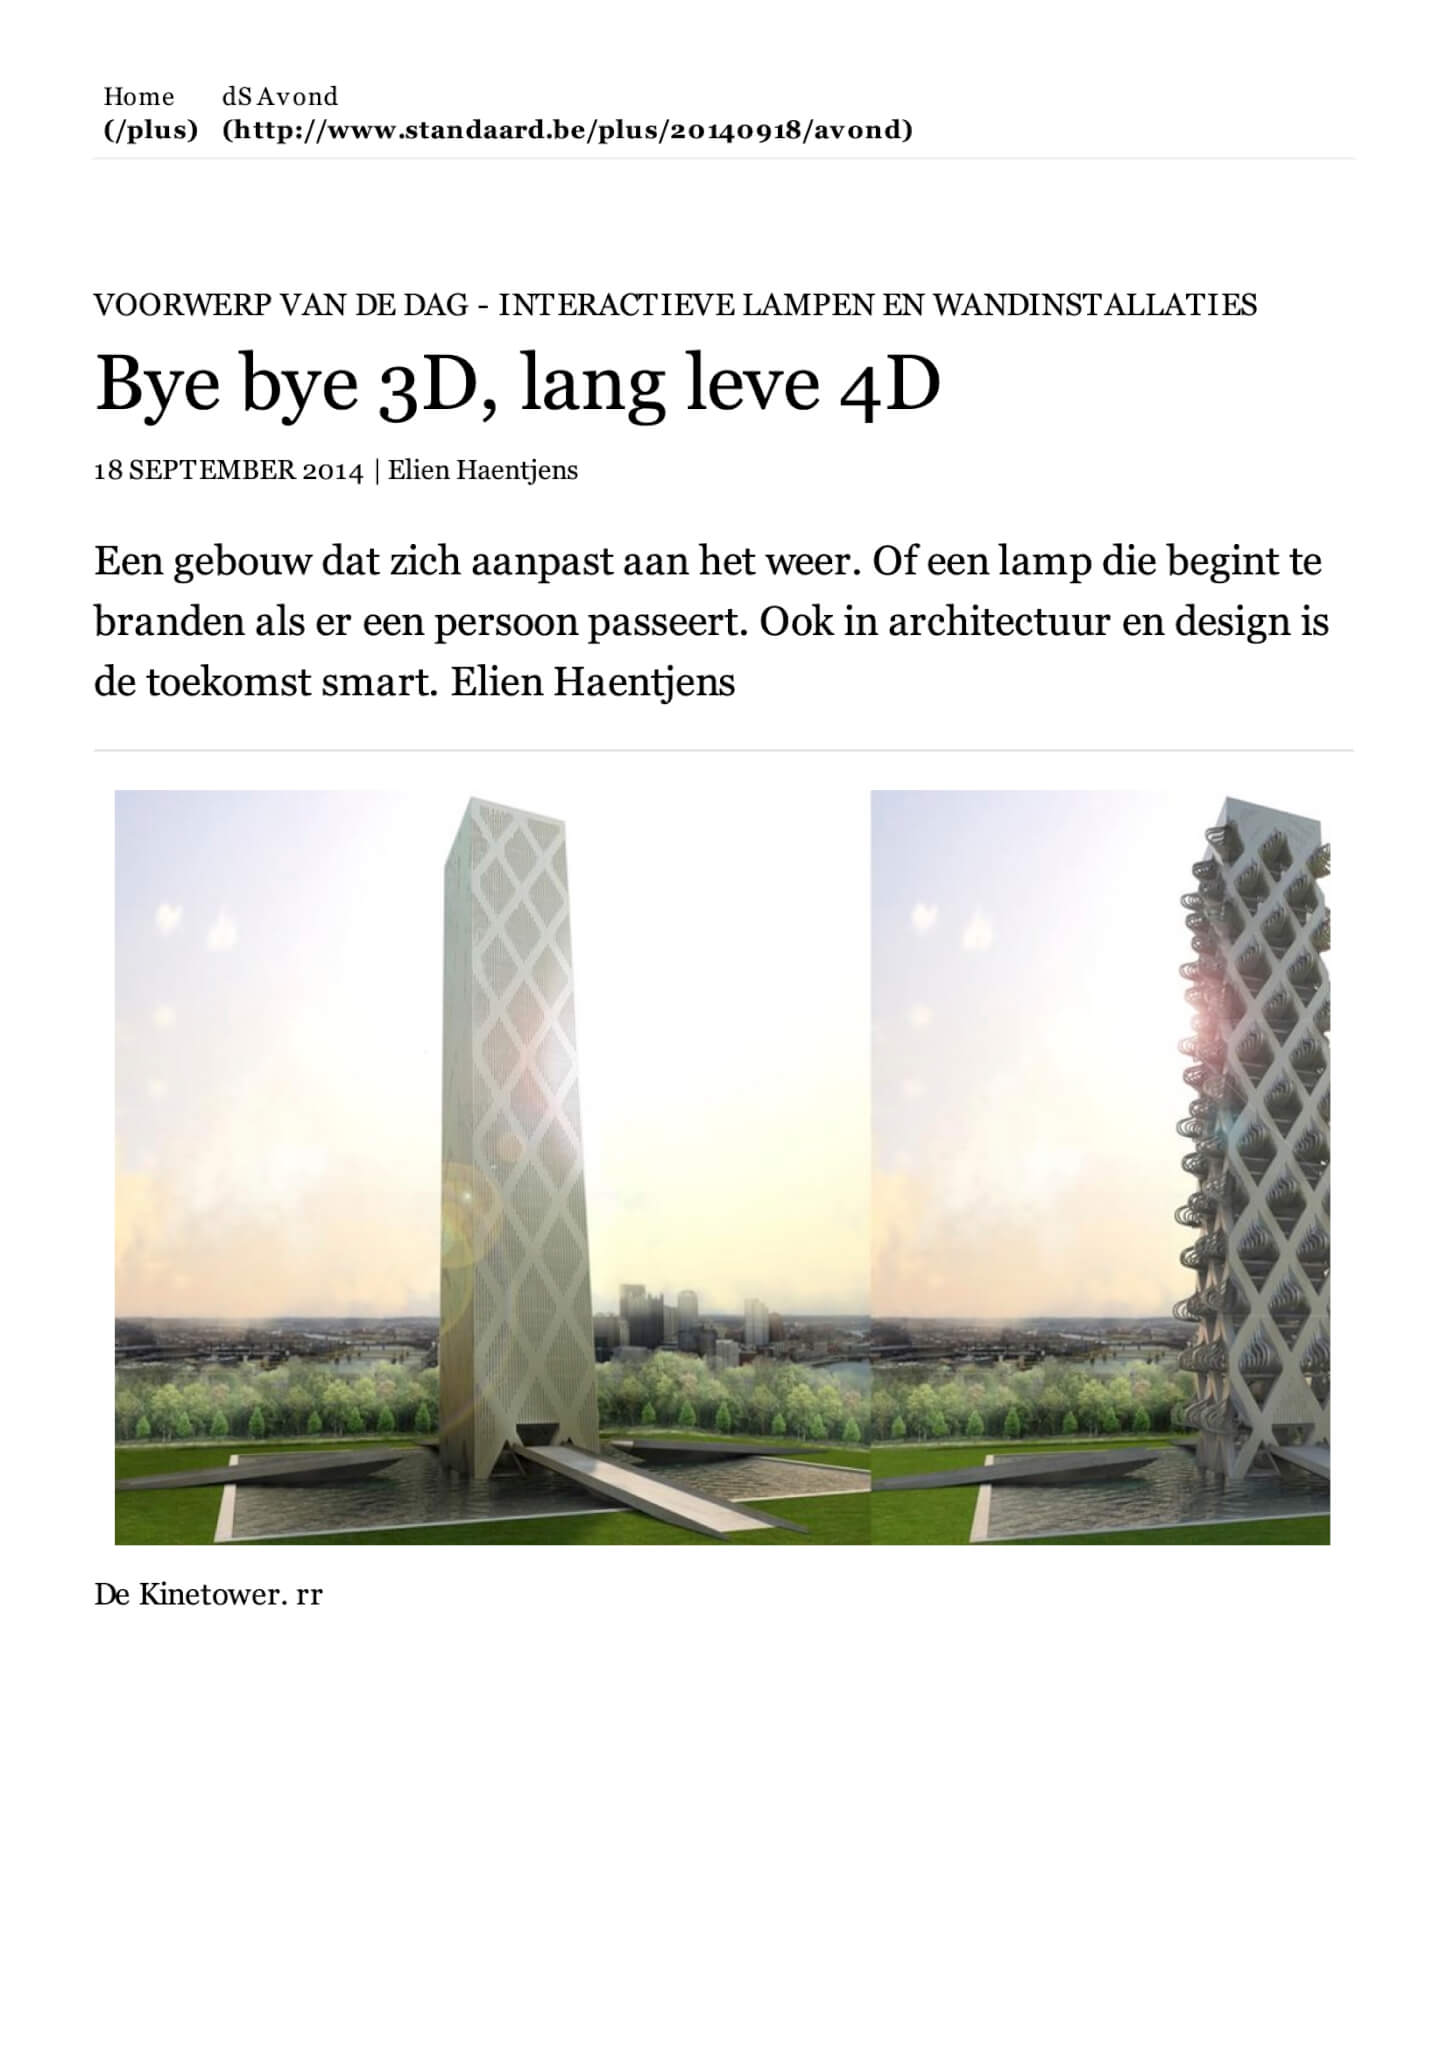 Bye bye 3D, lang leve 4D - De Standaard1